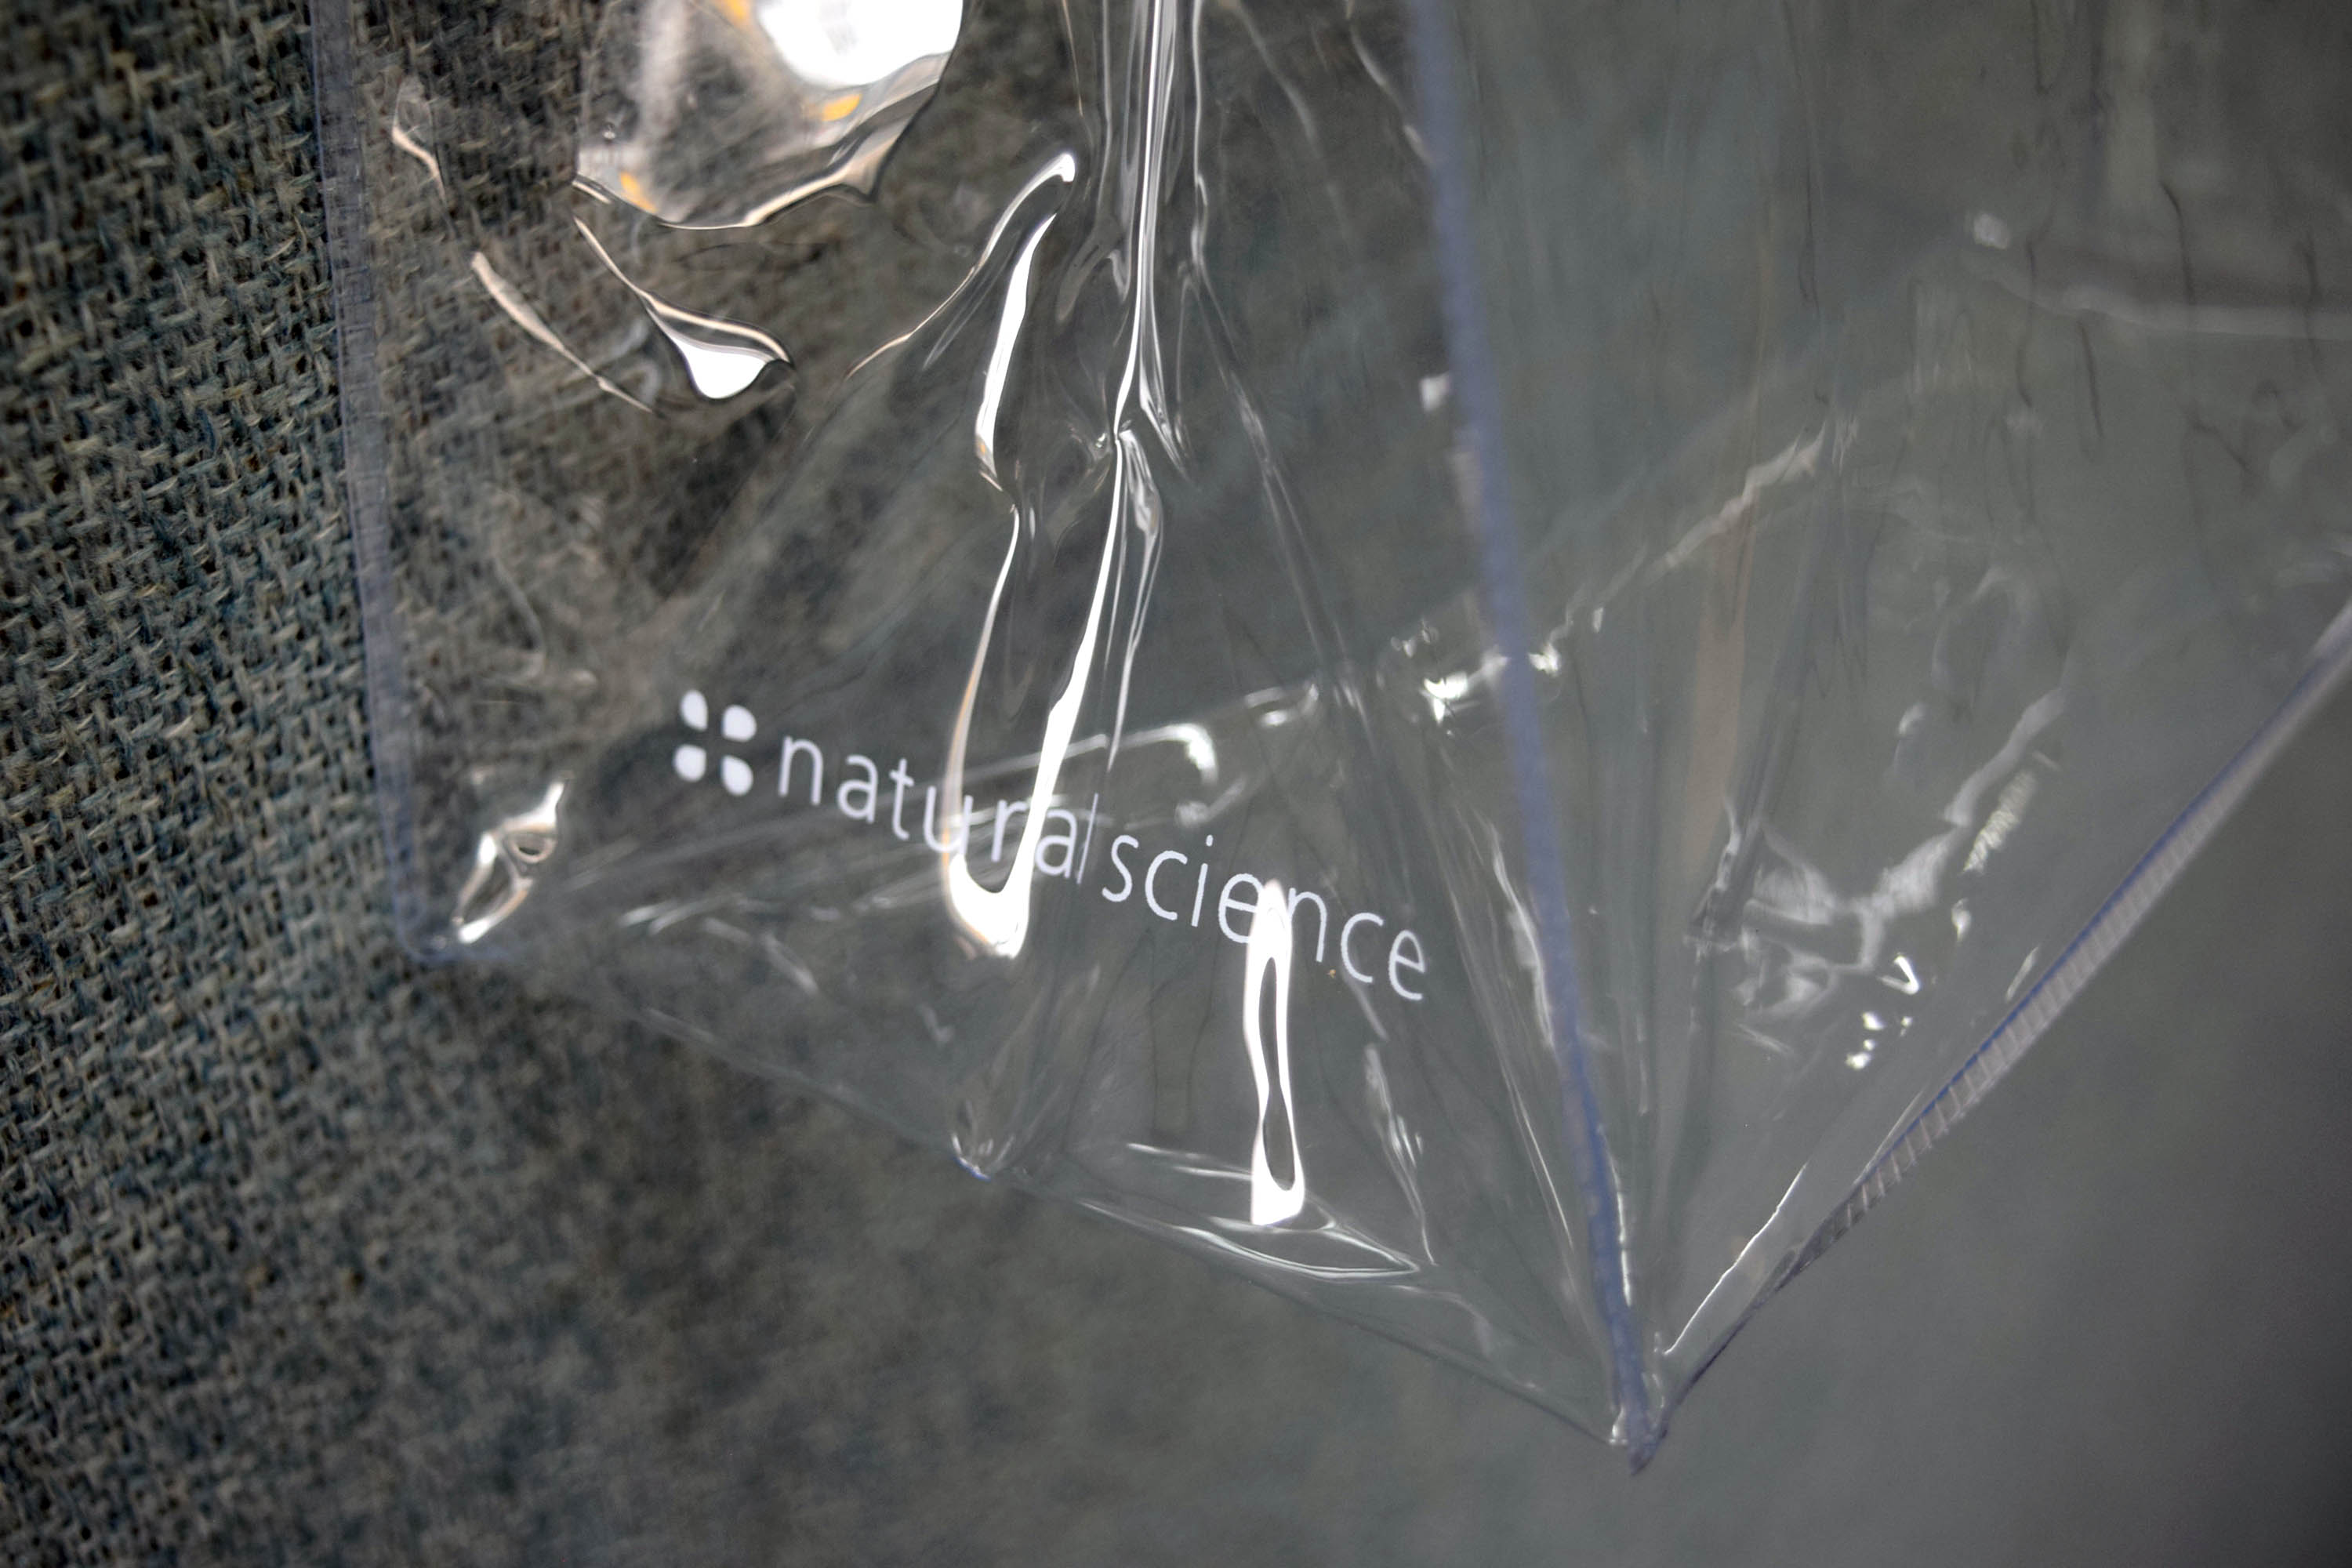 オーガニック製品の販売・ディスプレイ用。完全オリジナル製作のPVC透明バッグで、超音波縫製による美しい仕上がり。